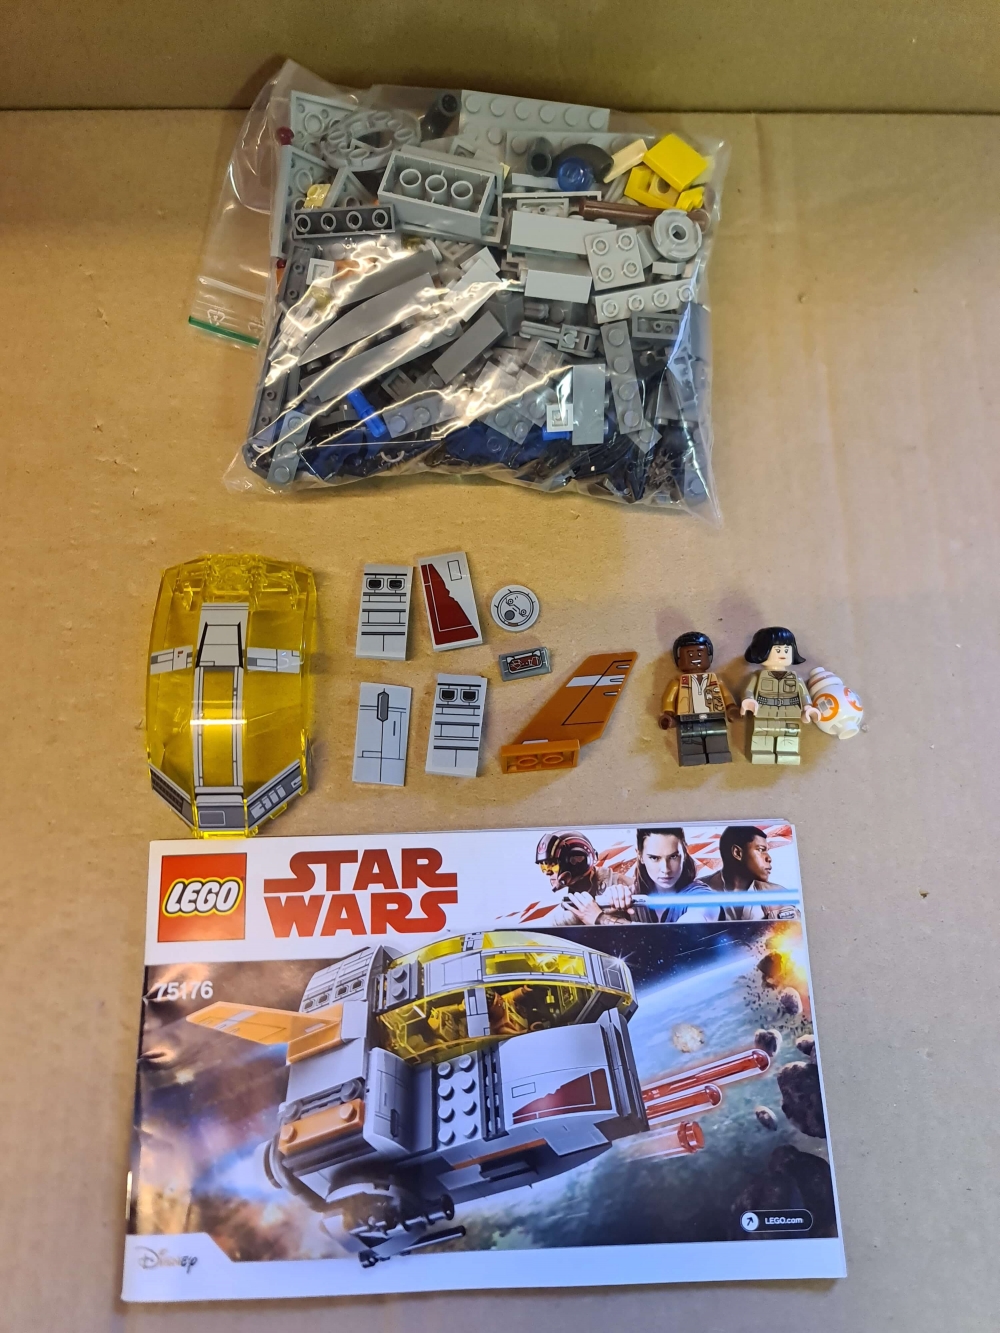 Sett 75176 fra Lego Star Wars : Episode 8 serien
Meget pent.
Komplett med manual.